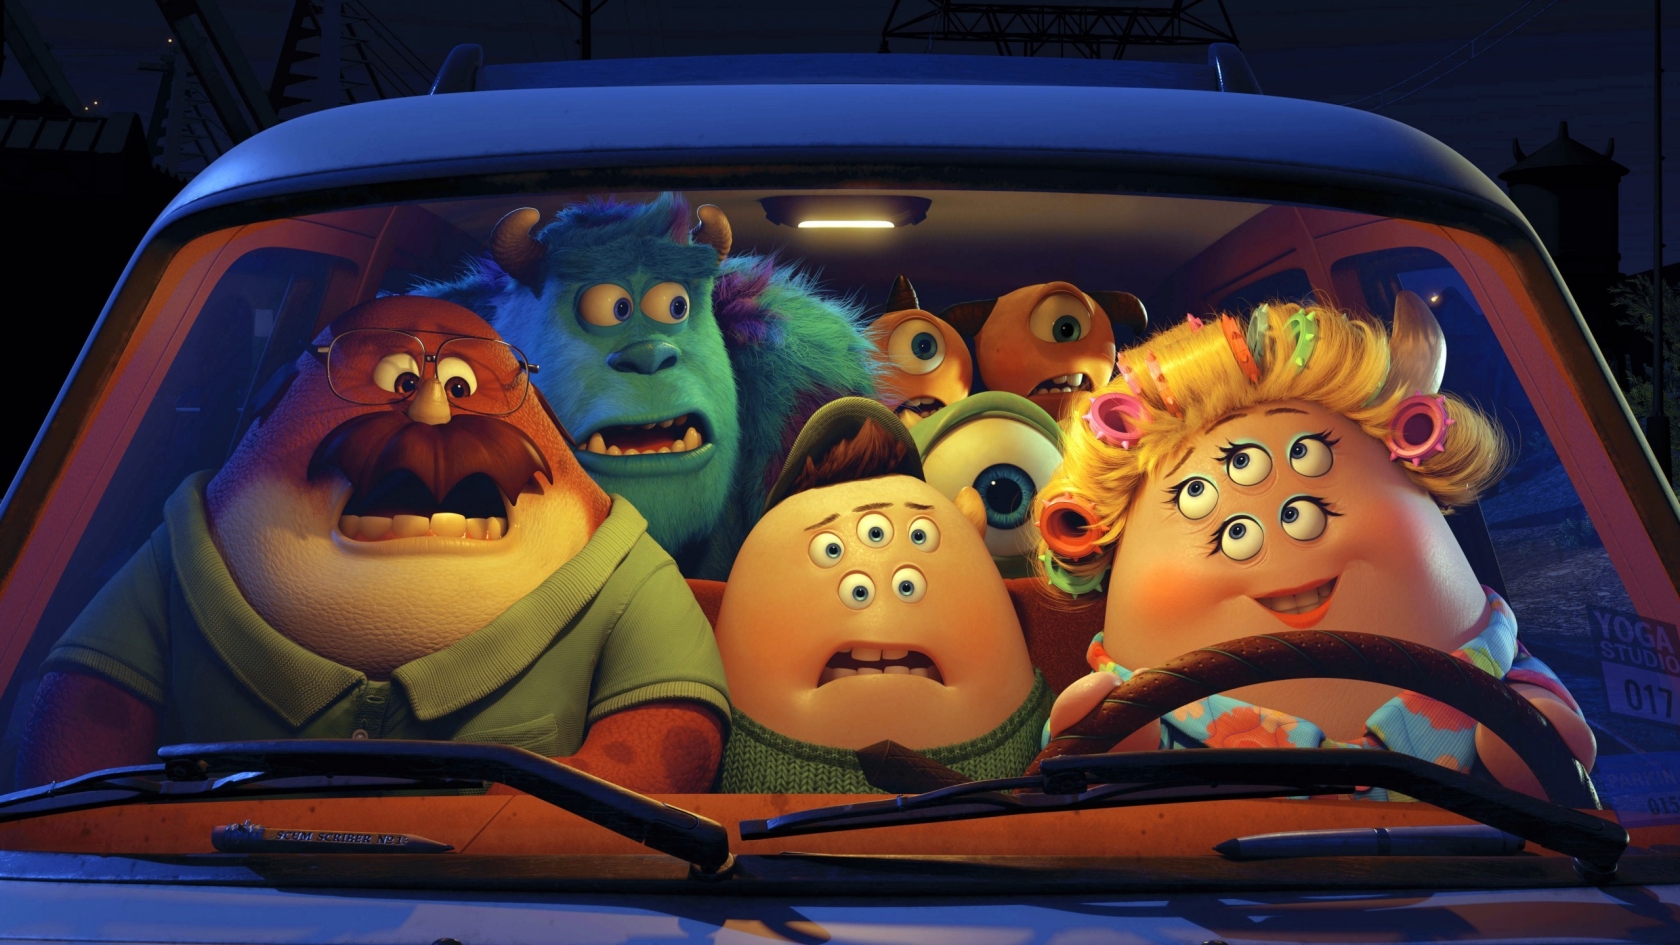 Pixar Monsters University Film for 1680 x 945 HDTV resolution